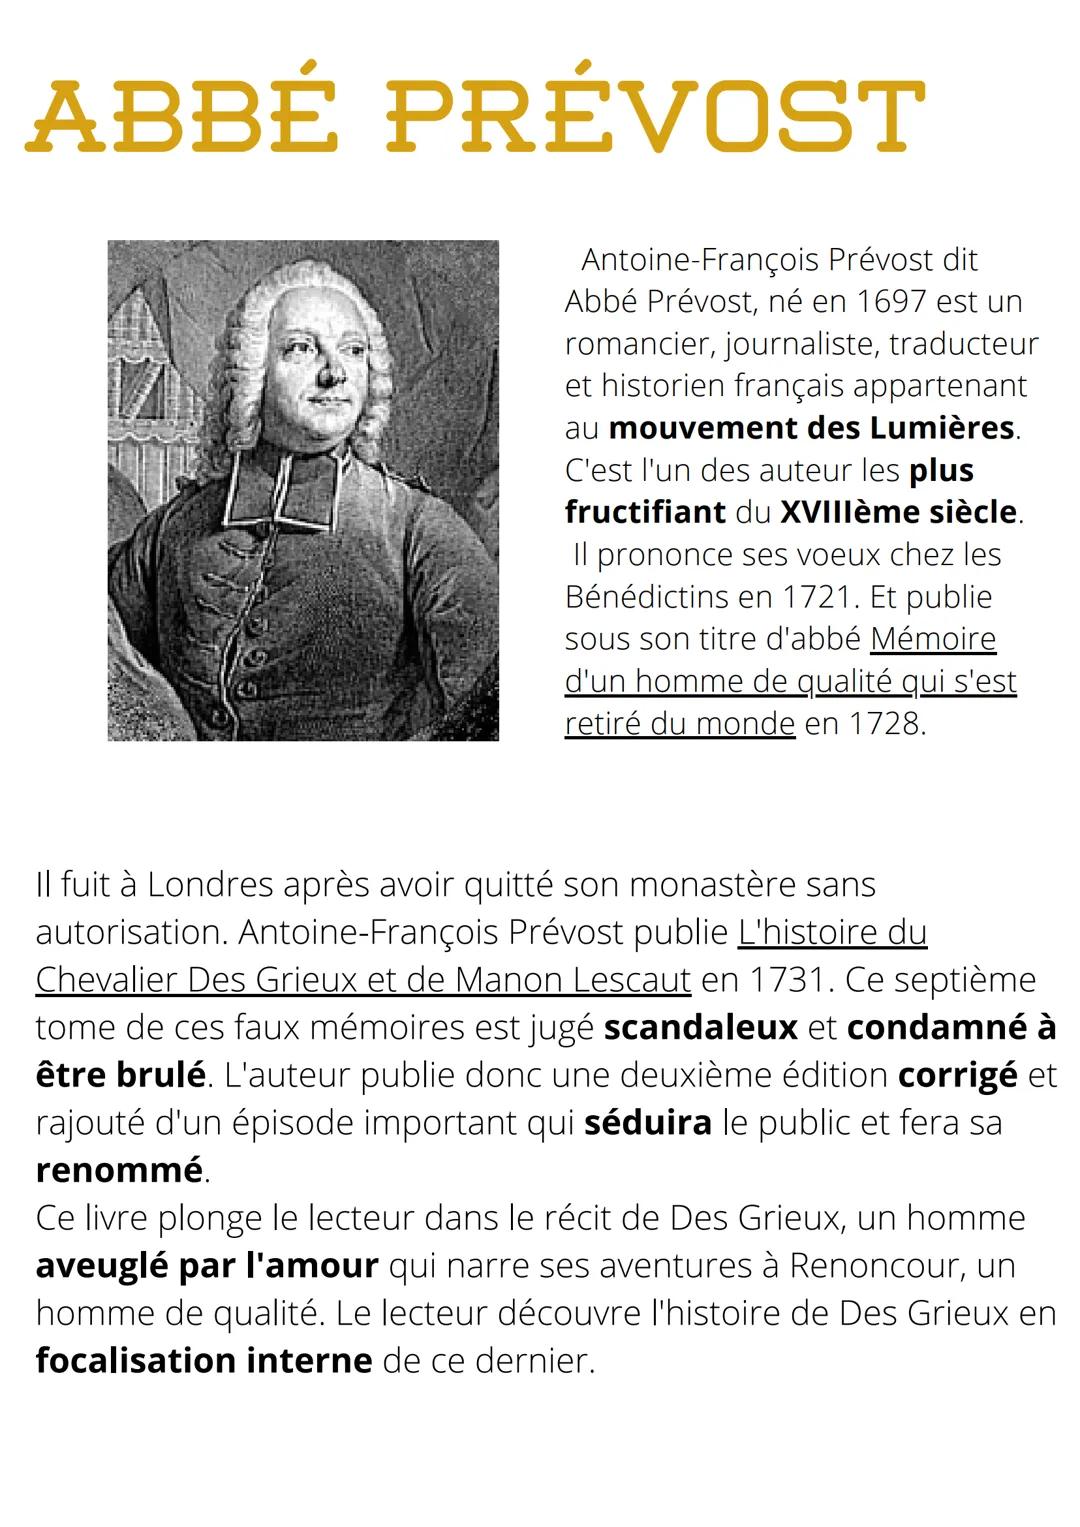 ABBÉ PRÉVOST
Antoine-François Prévost dit
Abbé Prévost, né en 1697 est un
romancier, journaliste, traducteur
et historien français appartena